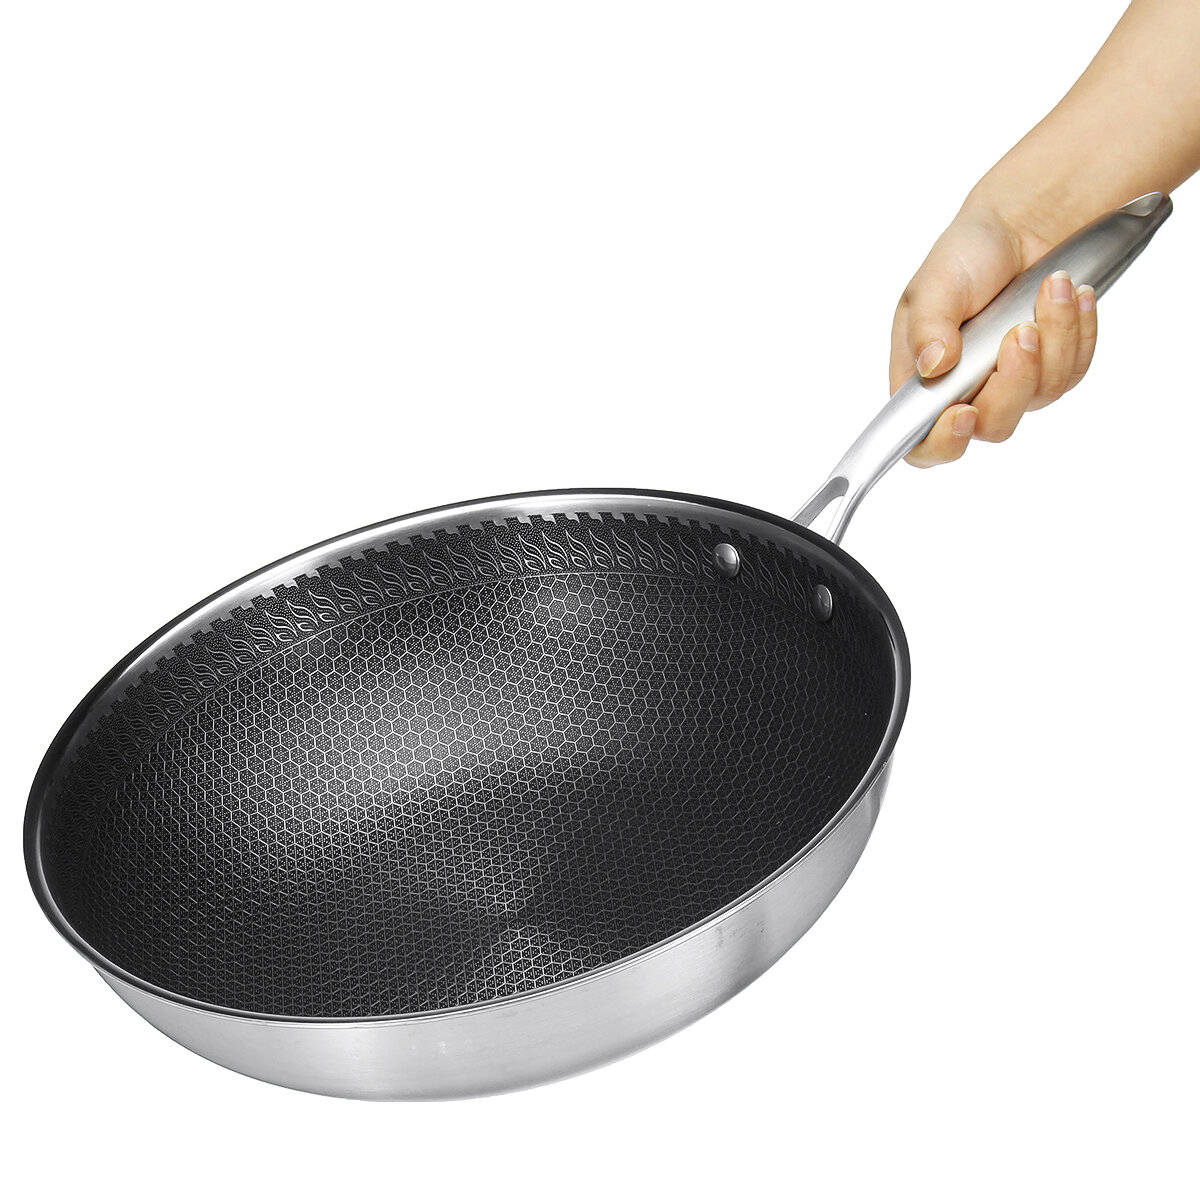 

Сковорода из нержавеющей стали с антипригарным покрытием Домашняя кастрюля Кухонная посуда Инструмент